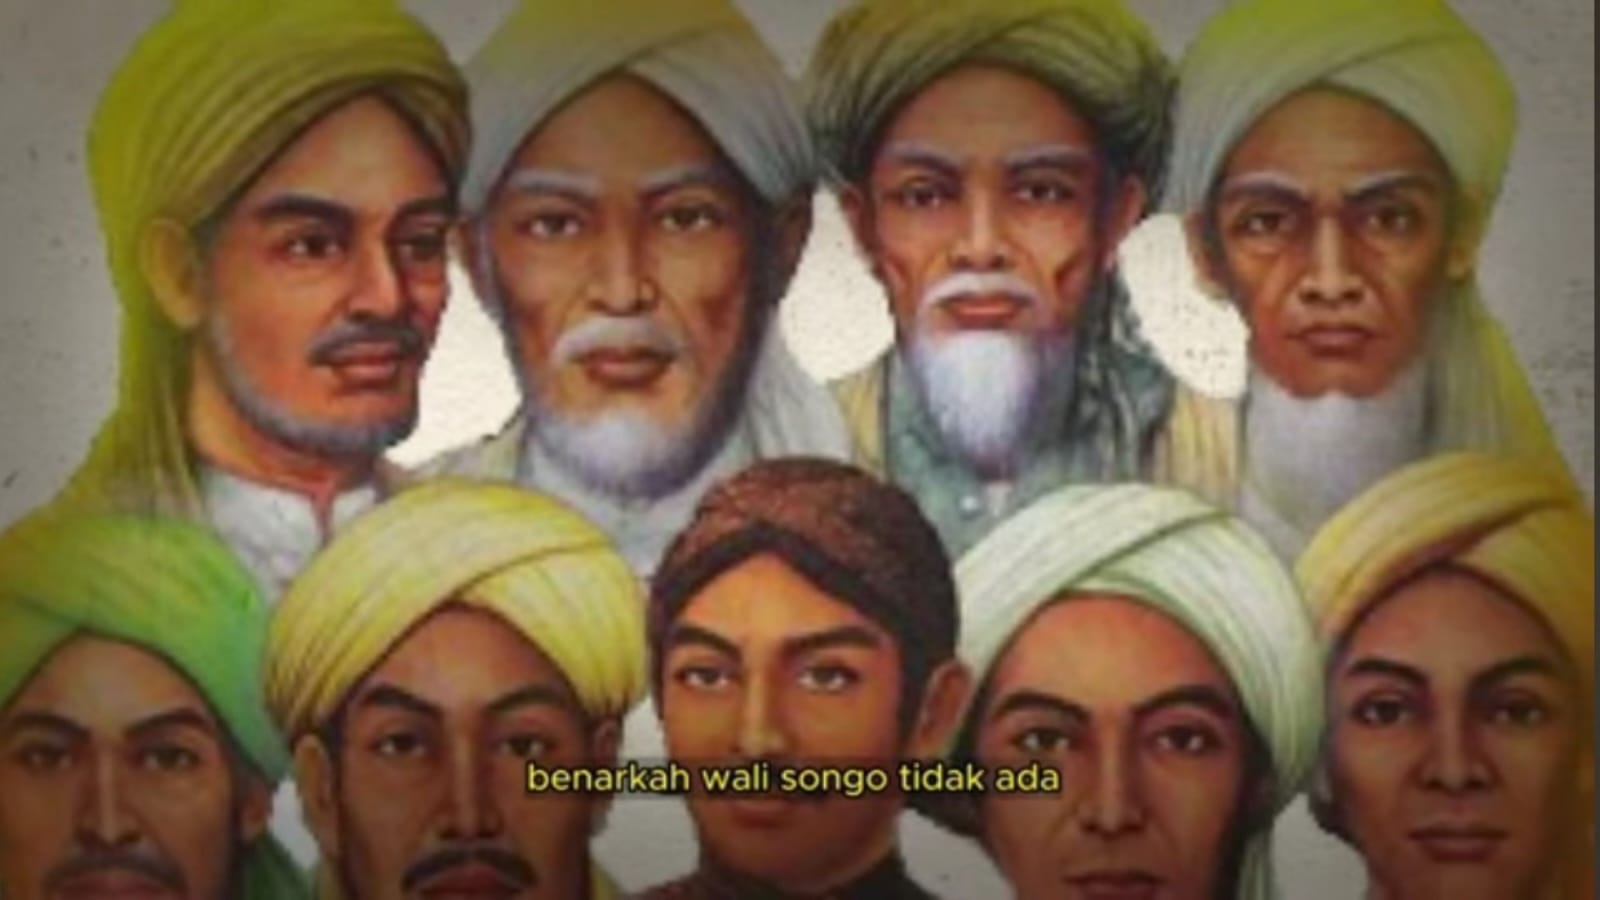 Wali Songo: Sebuah Kajian Terhadap Perkembangan Islam di Pulau Jawa, Benarkah Tidak Hanya Sembilan?